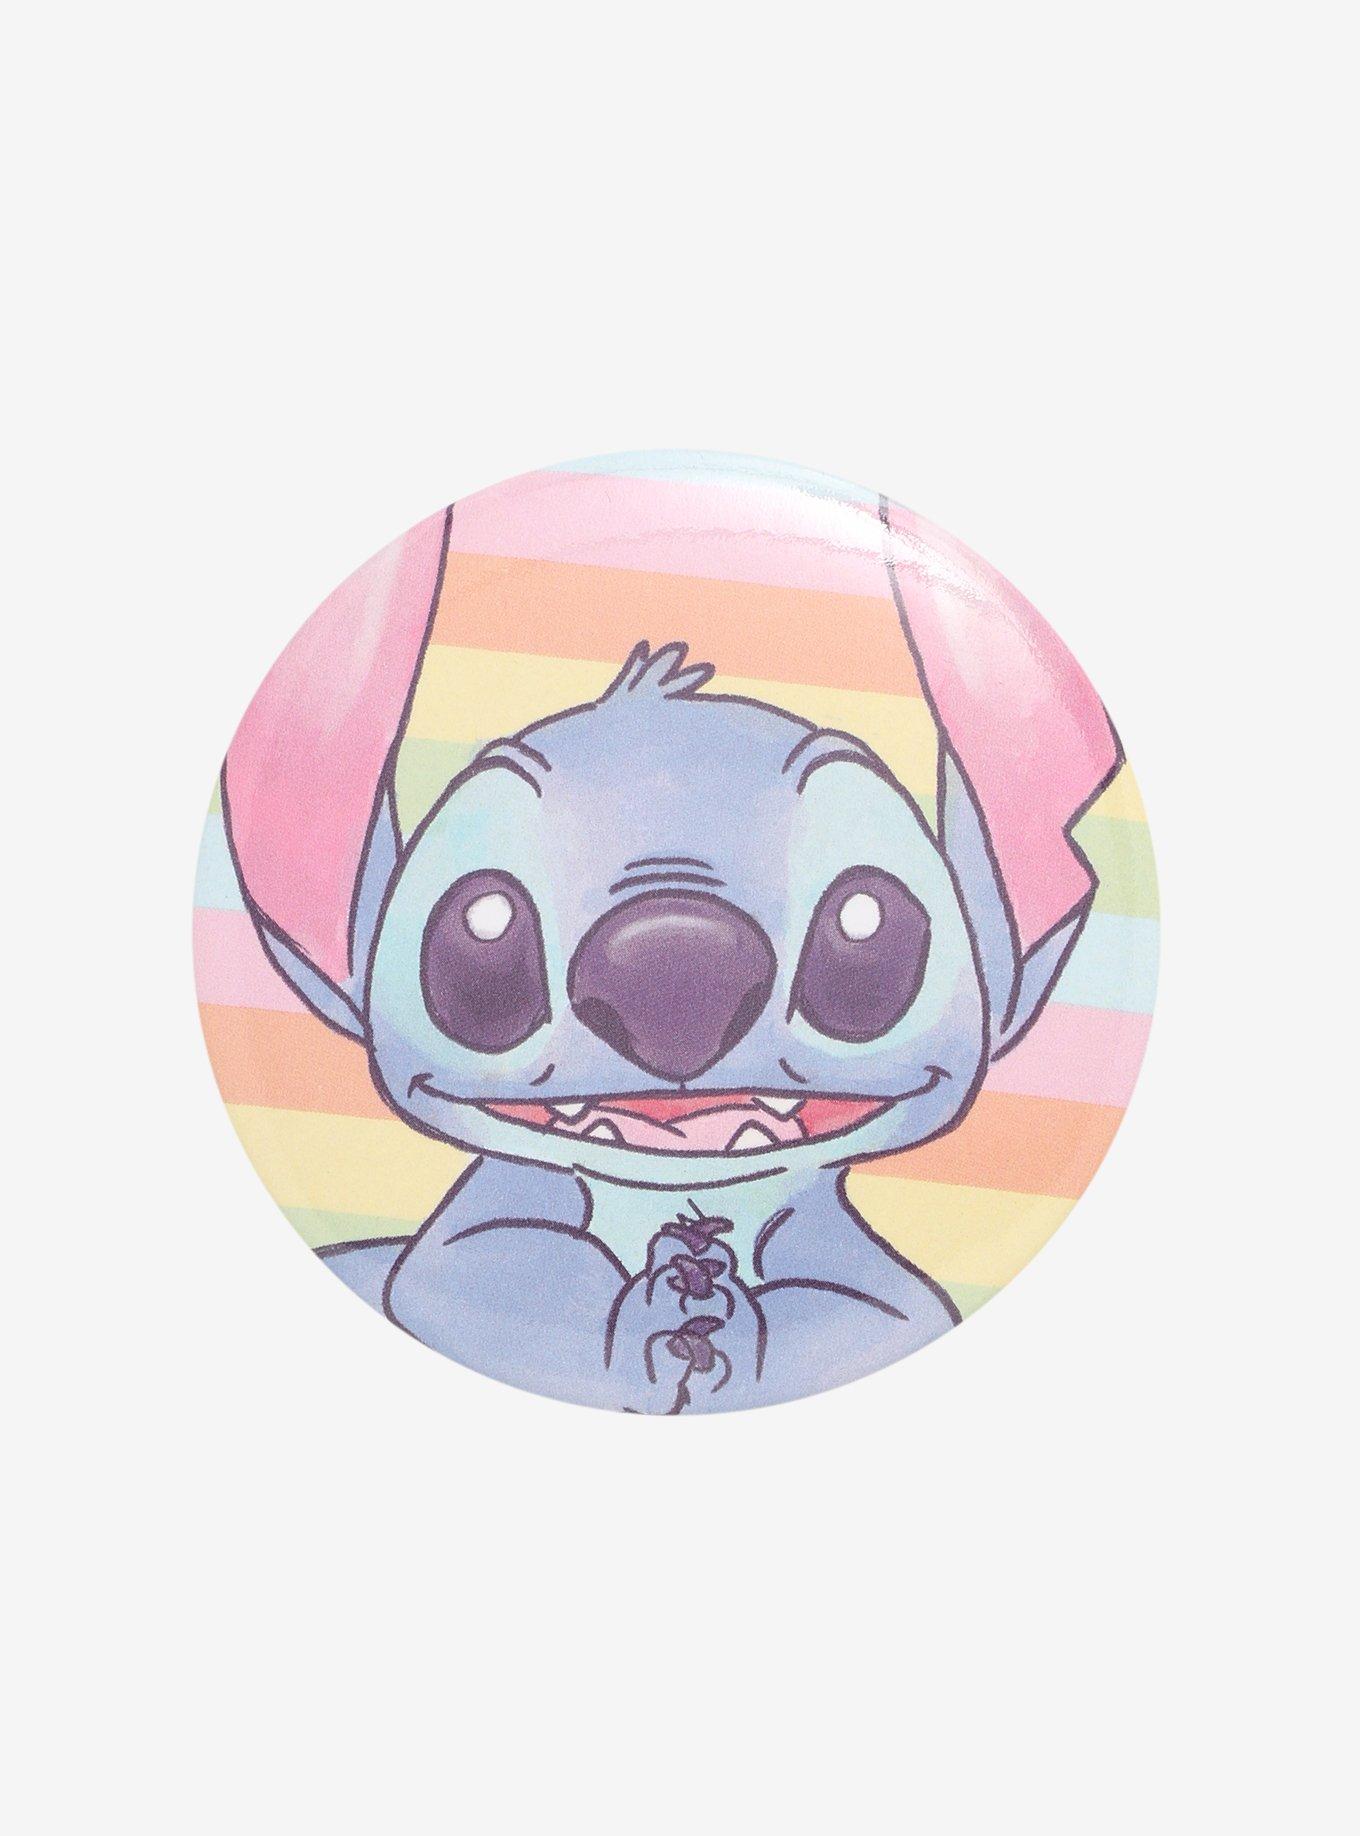 Disney Lilo & Stitch Watercolor Button, Hot Topic